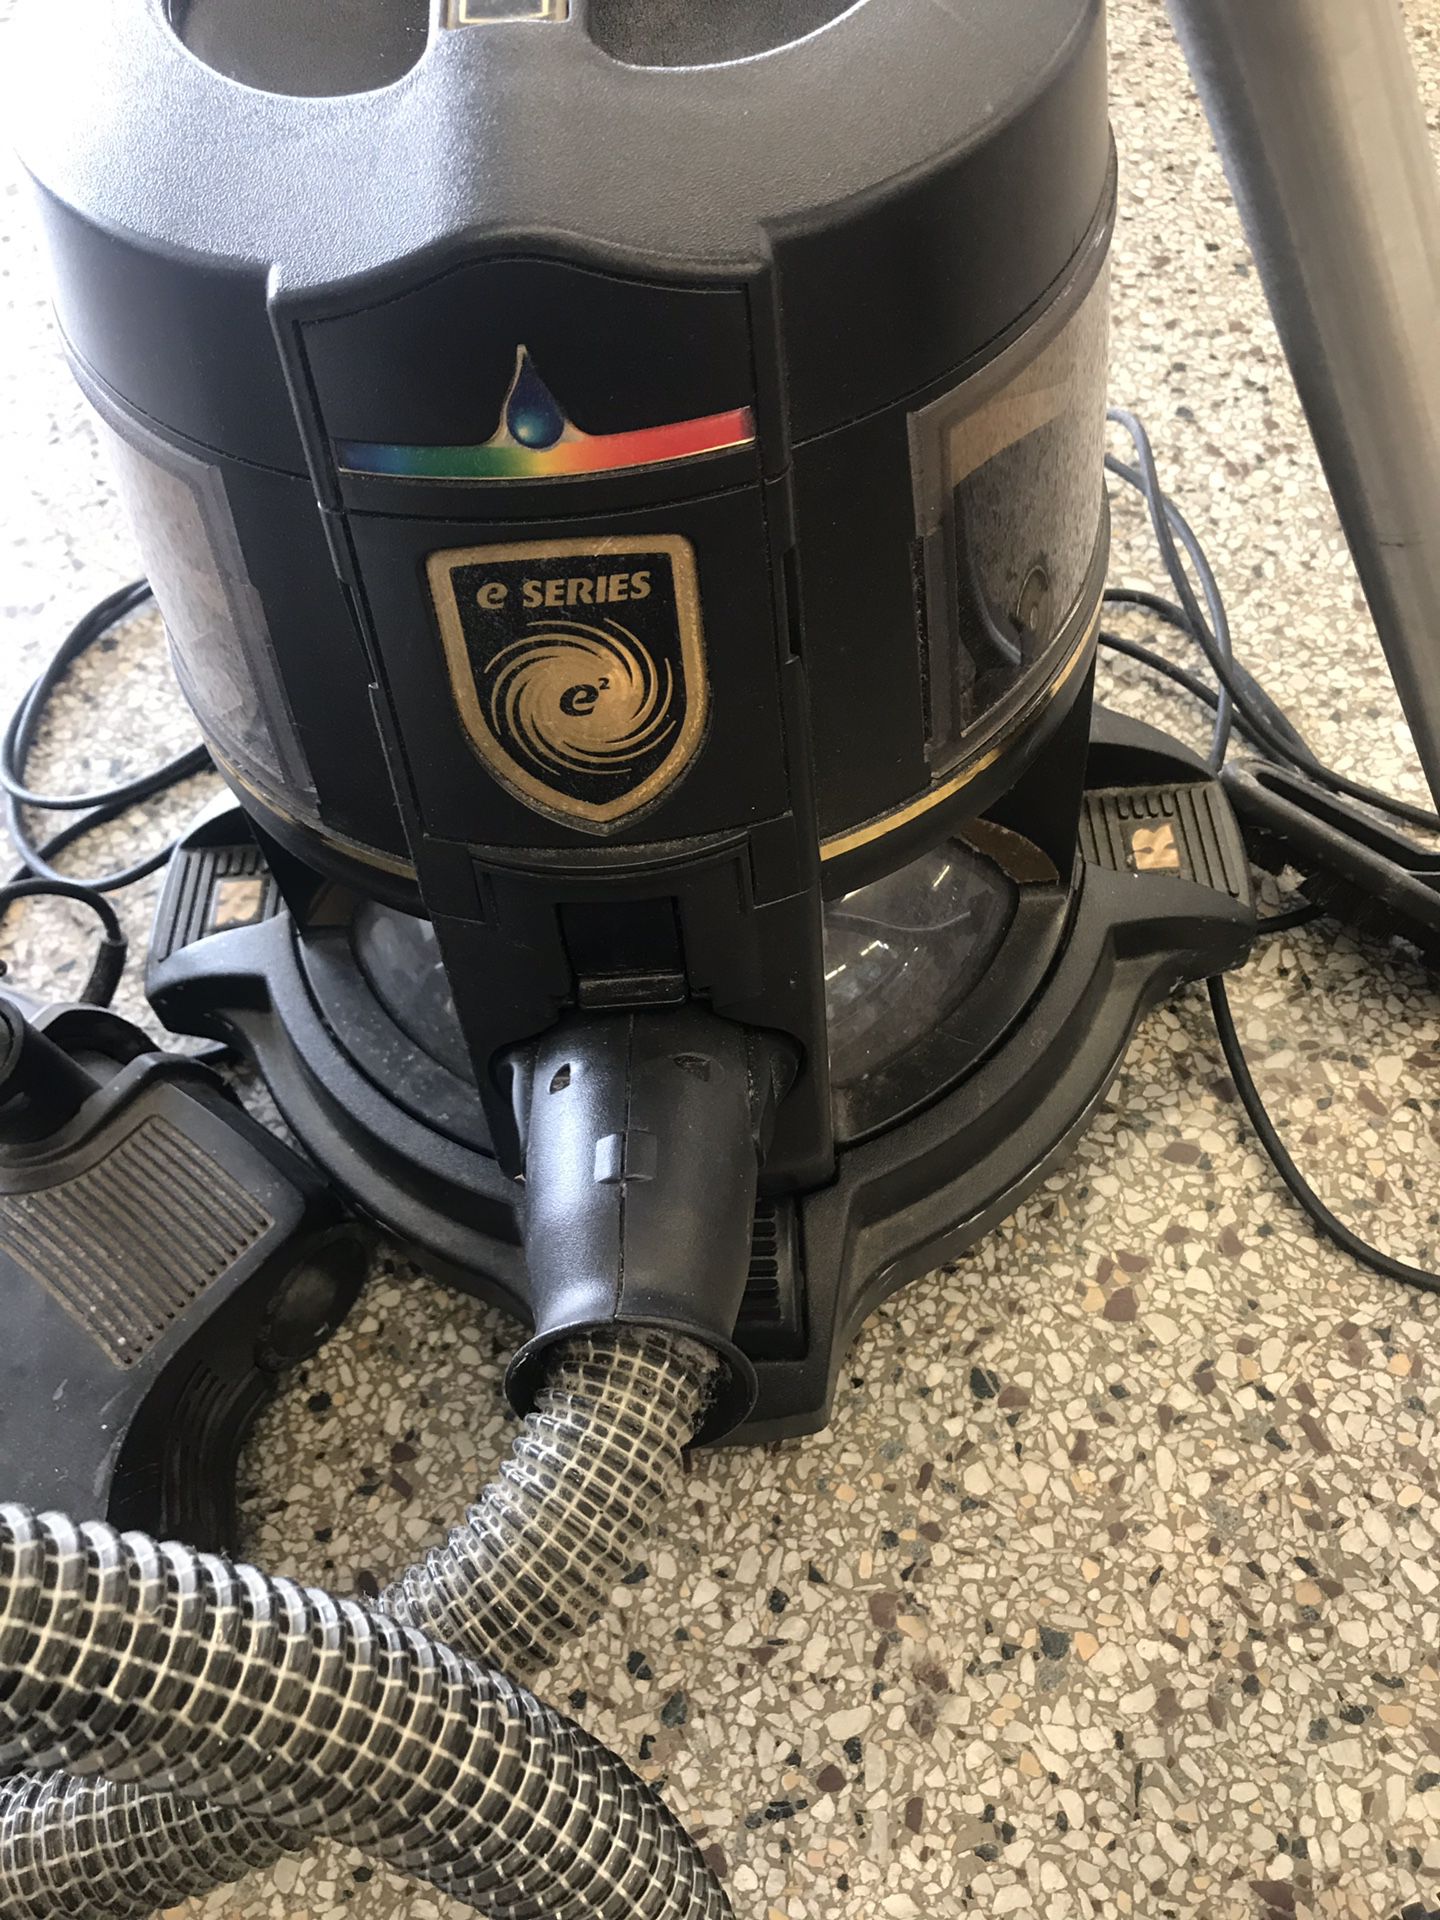 Rainbow E-Series Vacuum Cleaner